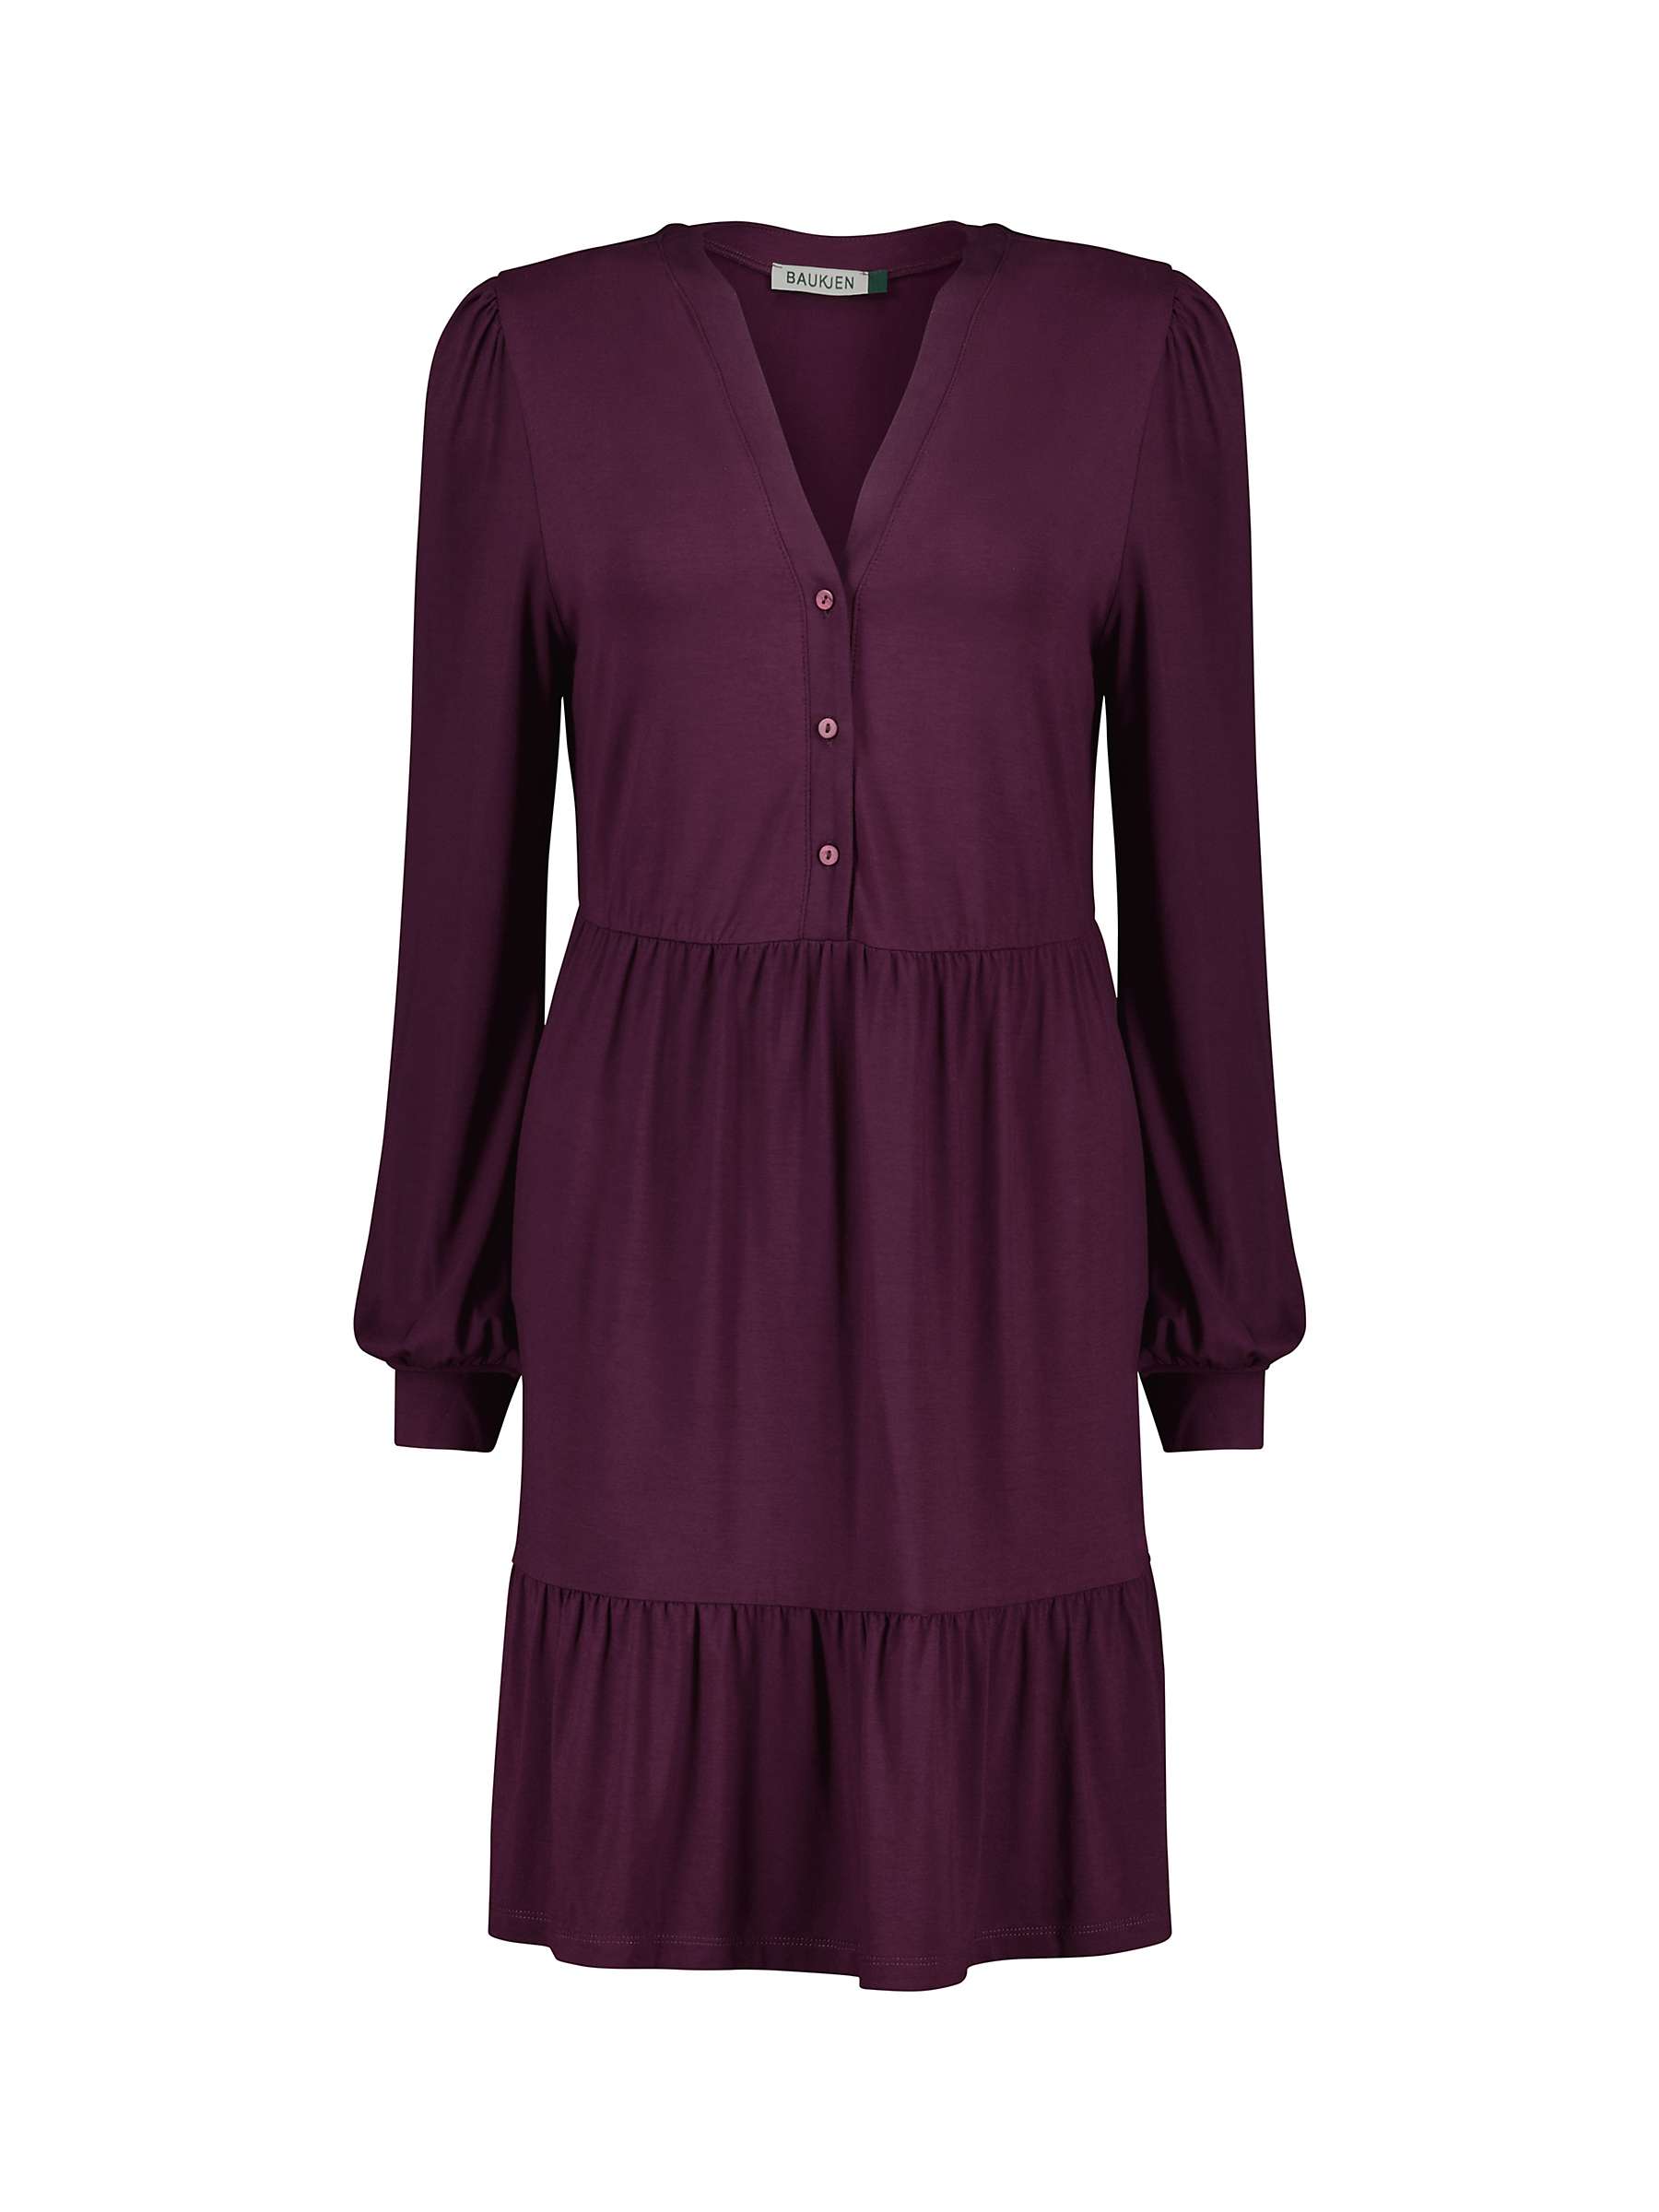 Buy Baukjen Ramona Dress, Dark Cherry Online at johnlewis.com